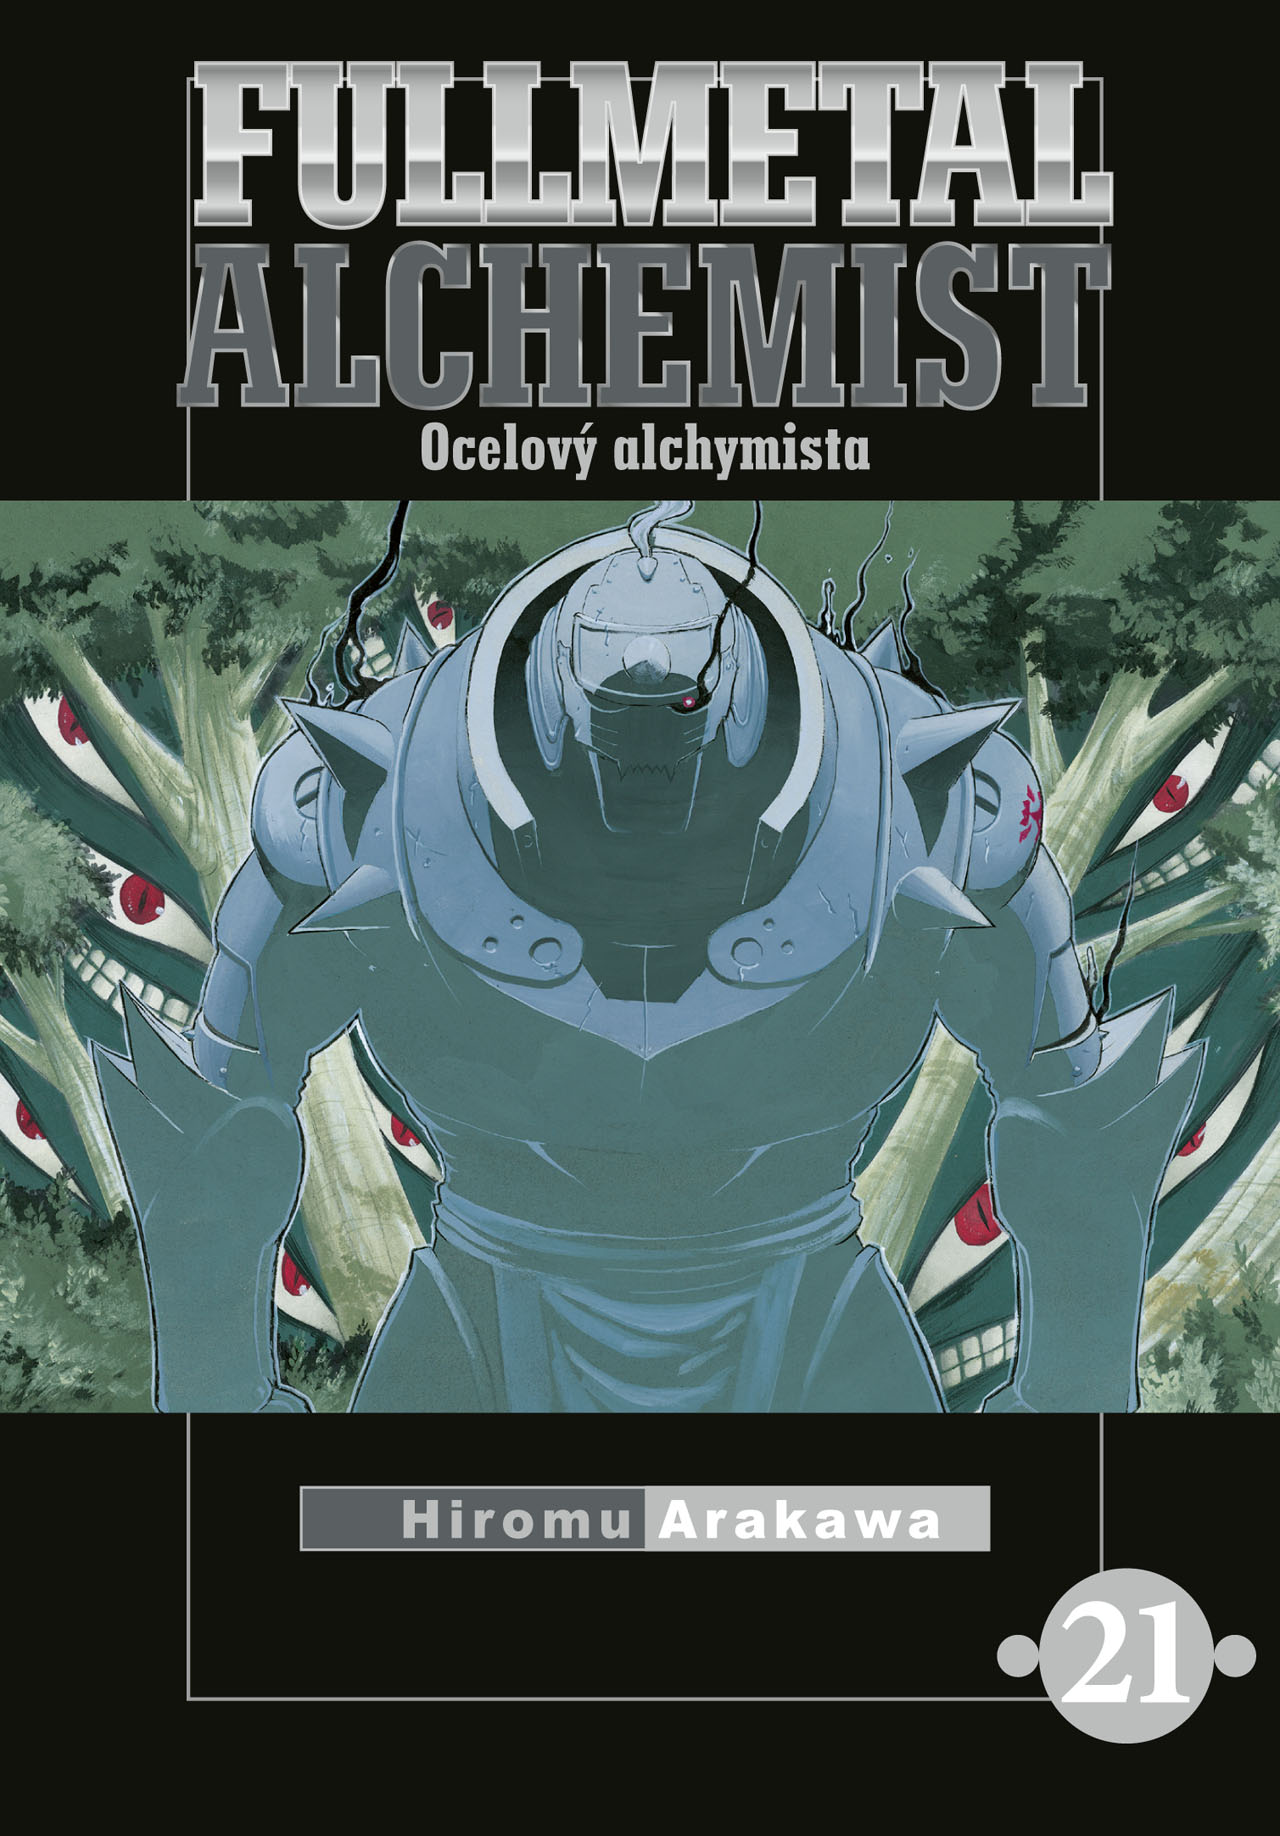 obrázek k novince - Fullmetal Alchemist - Ocelový alchymista 21